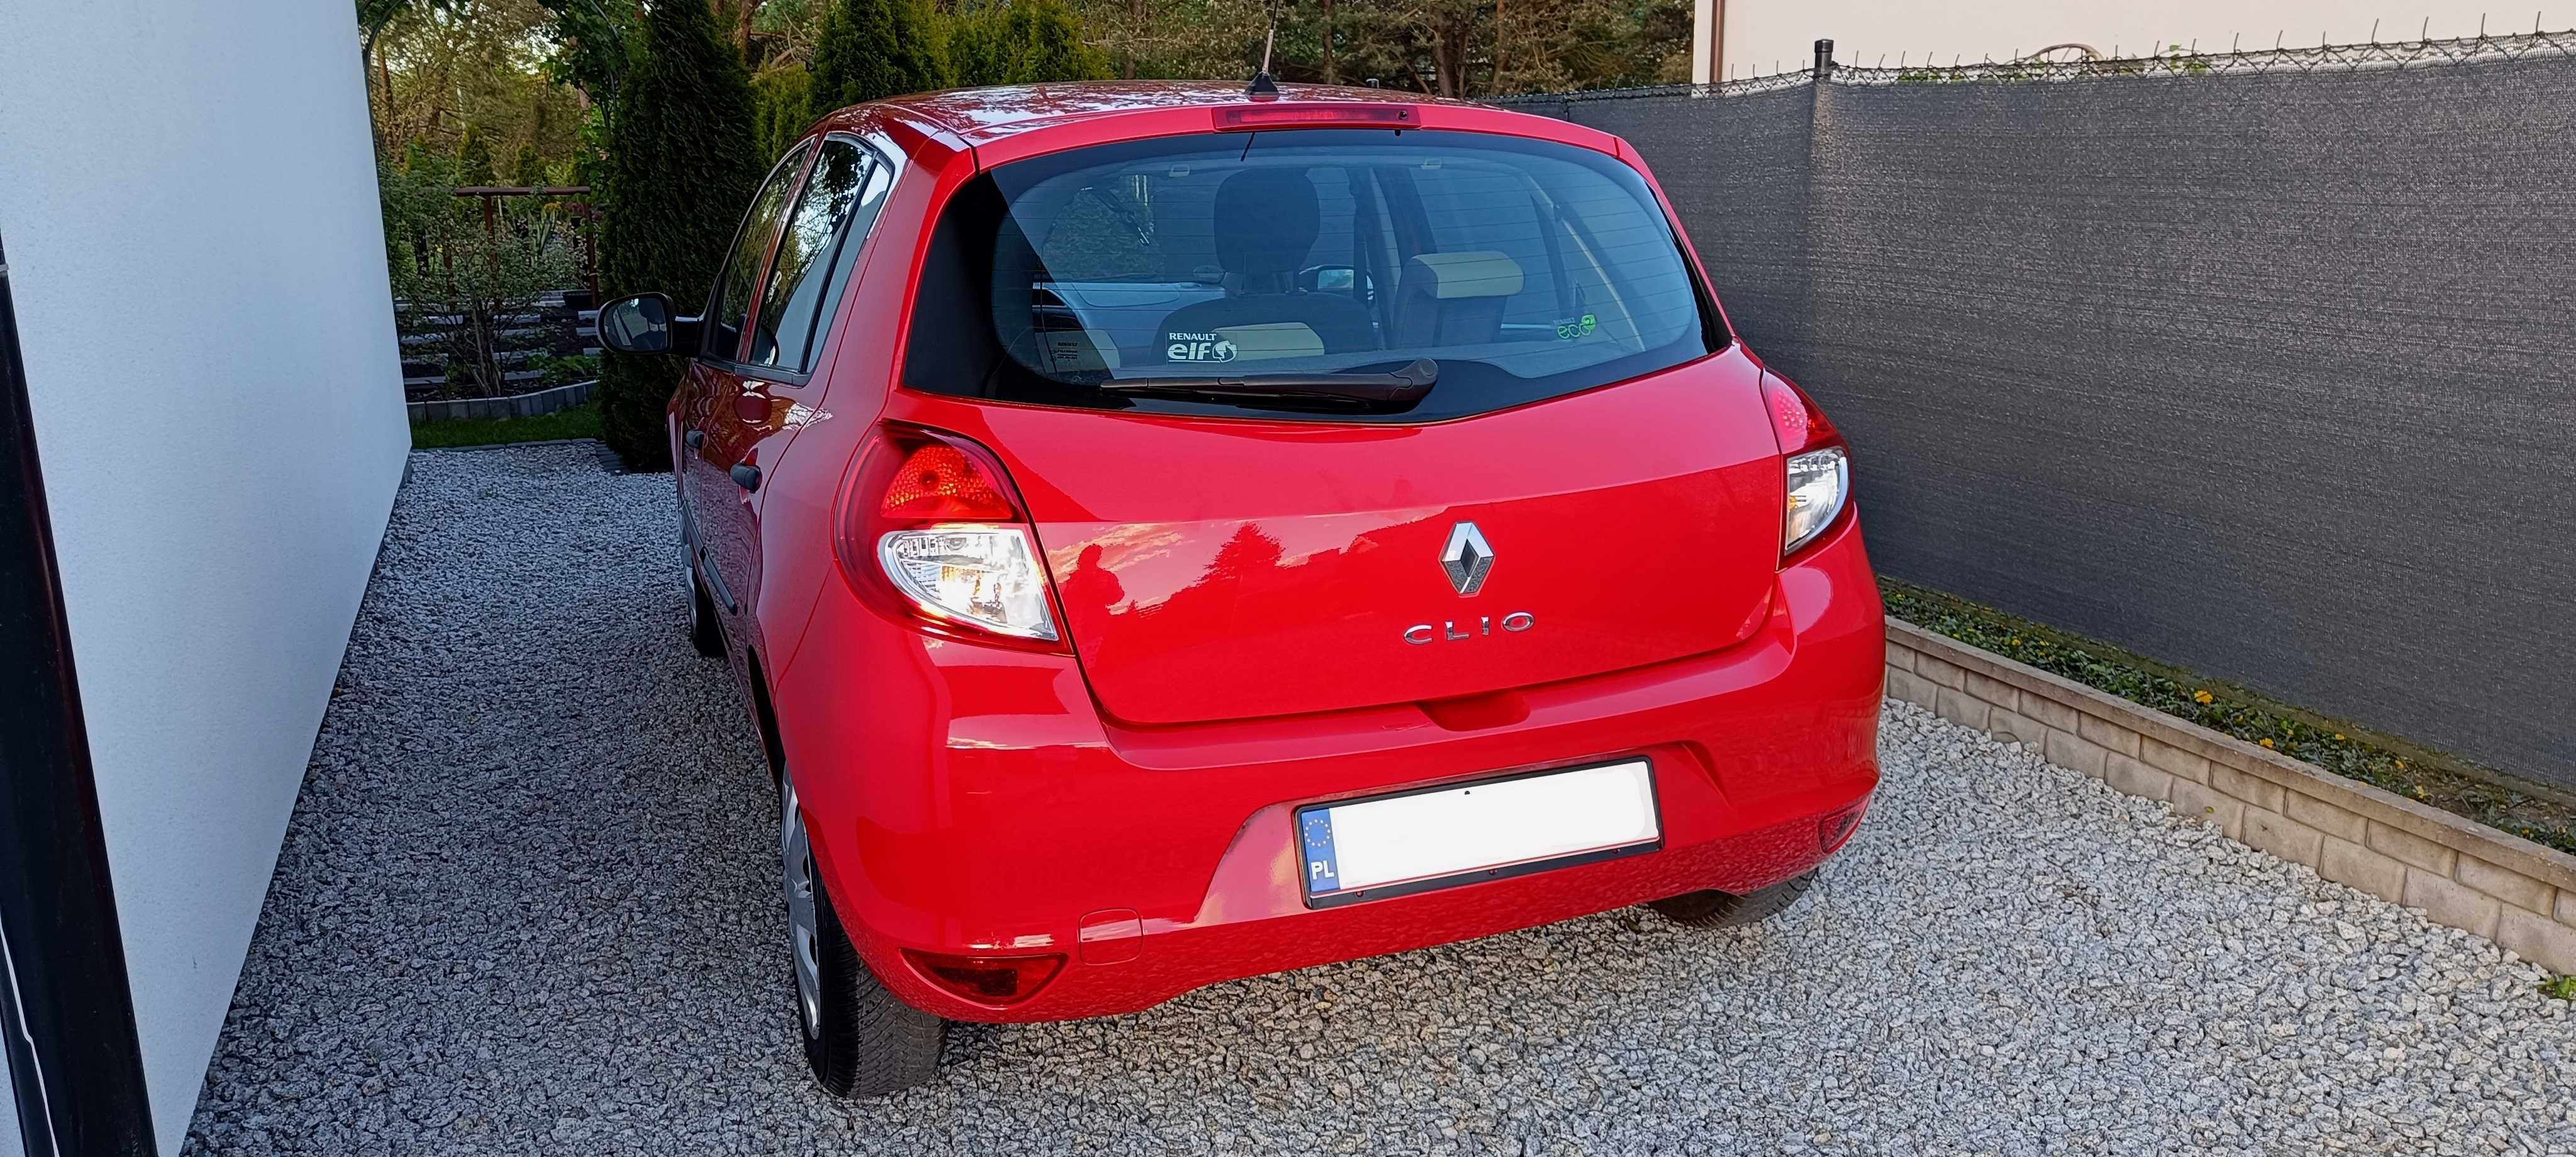 Renault Clio..Lift 1.2 benzyna  .. 2009 R .. 140 tys km przebiegu